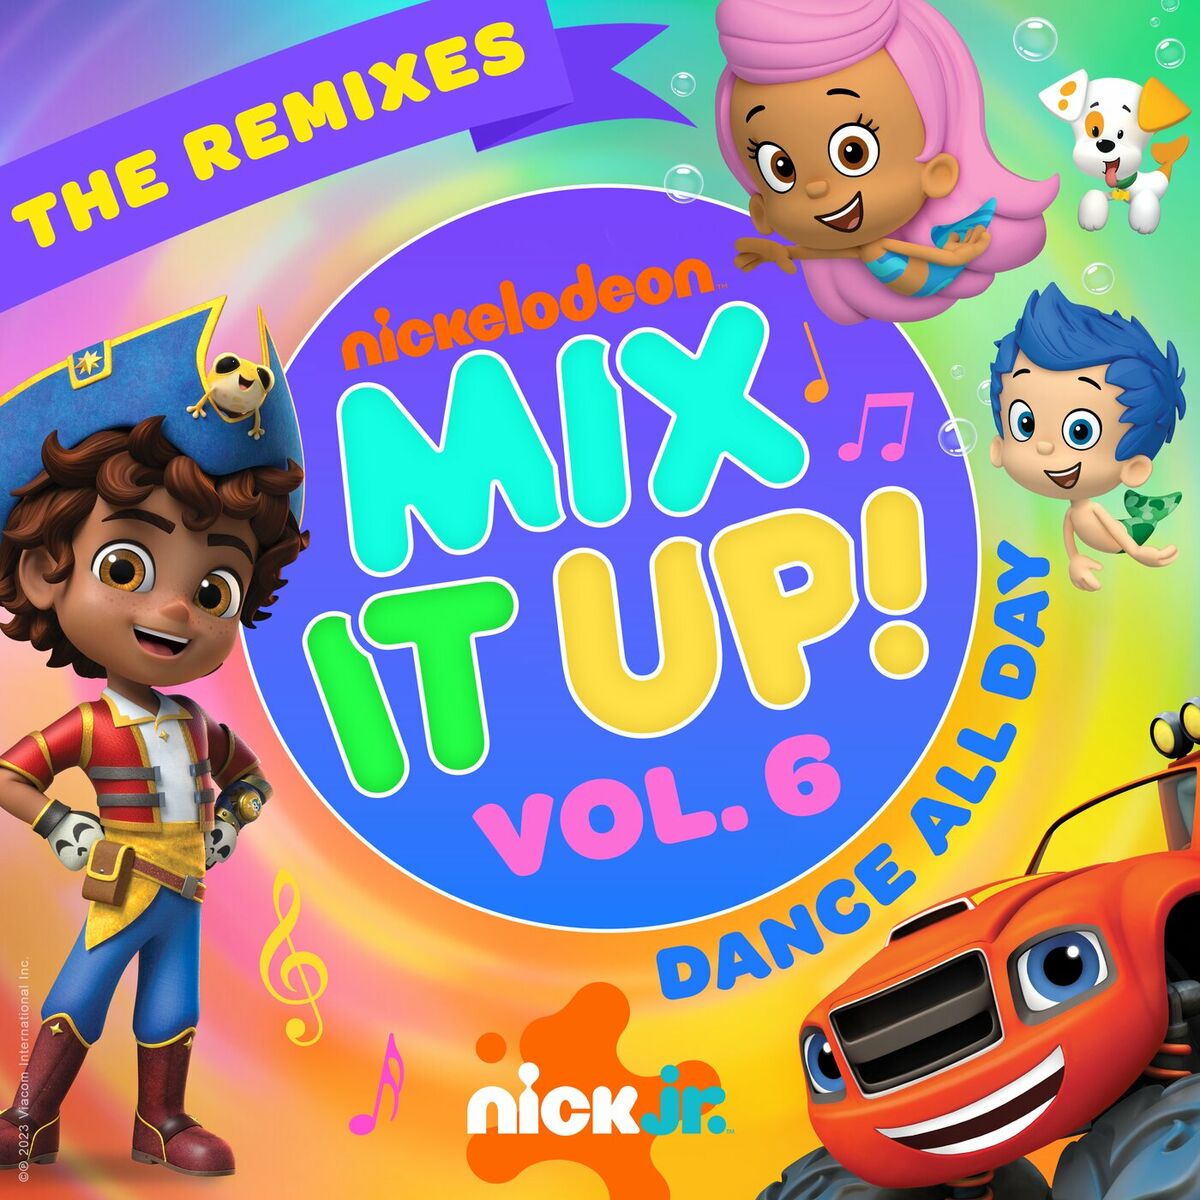 Nick Jr. - Nick Jr. Mix It Up! Vol. 6 – Dance All Day (The Remixes): lyrics  and songs | Deezer